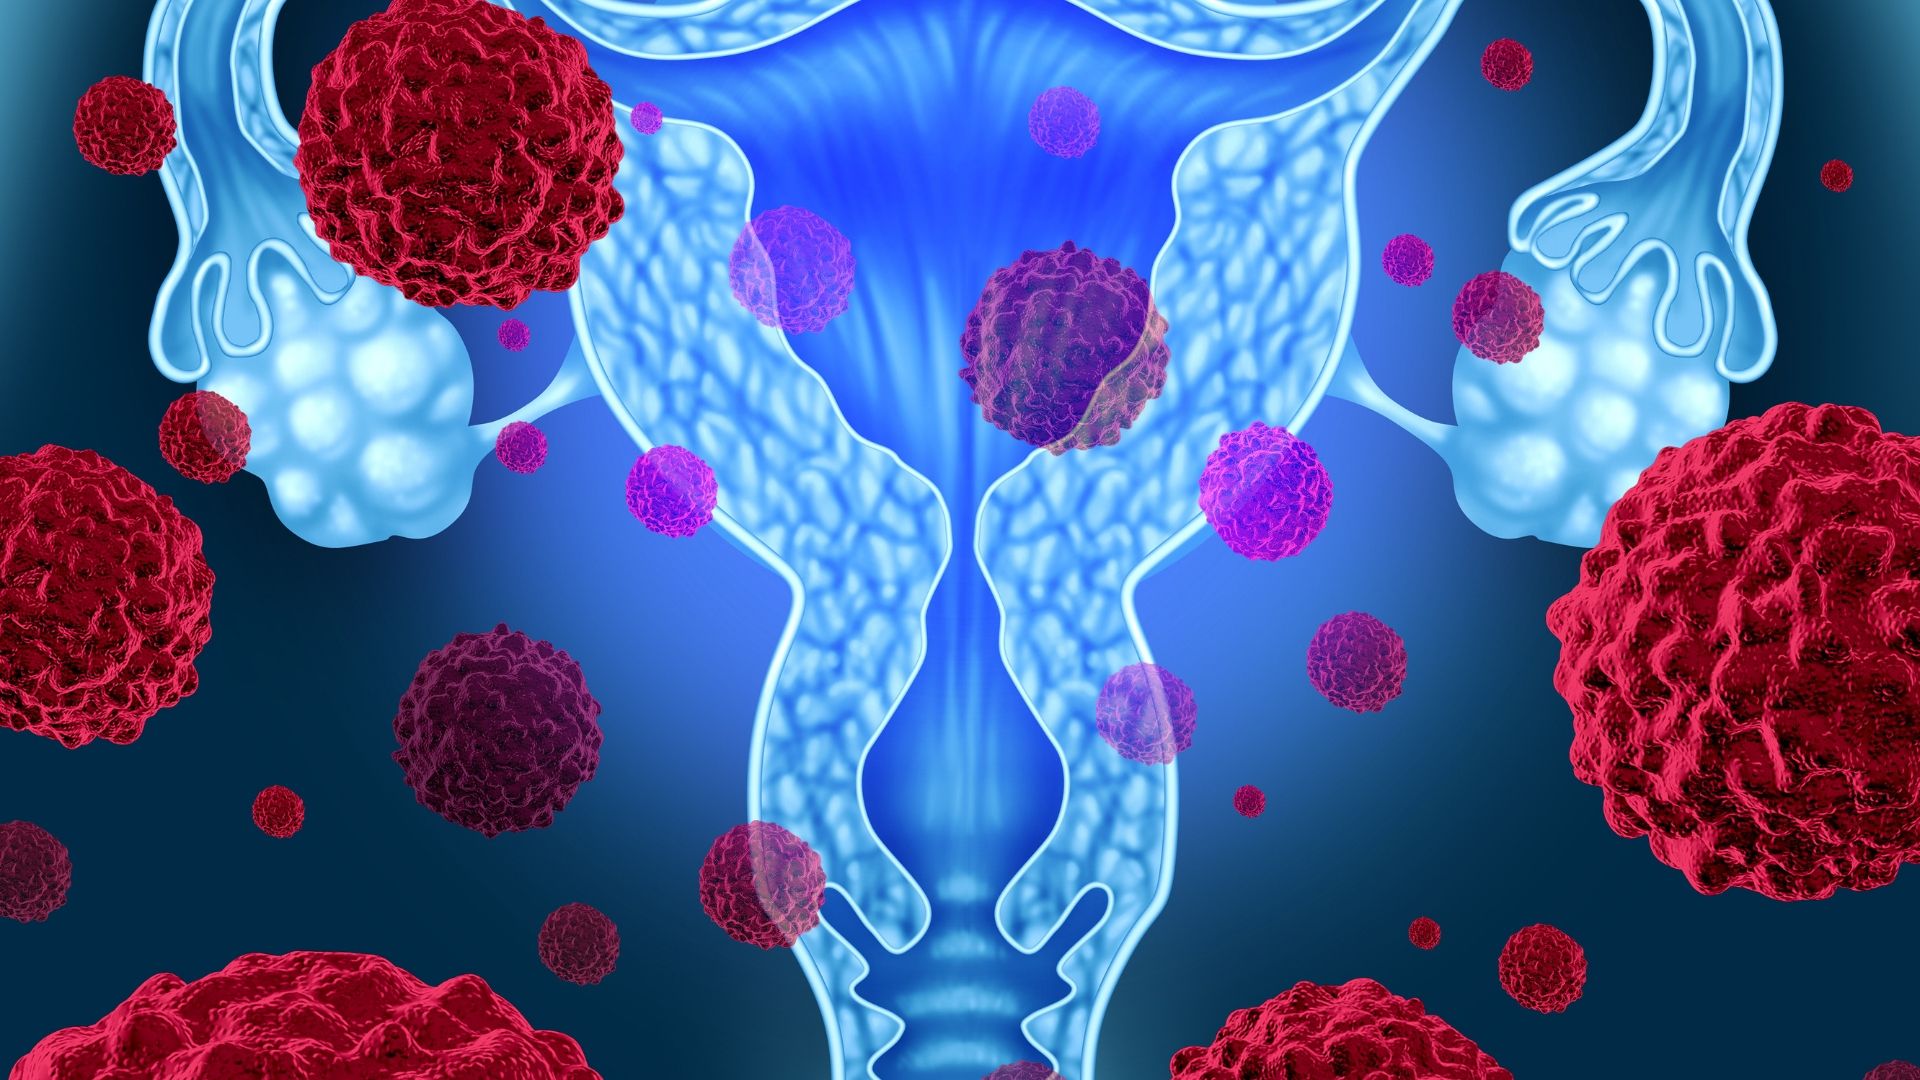 uterine fibroid treatment